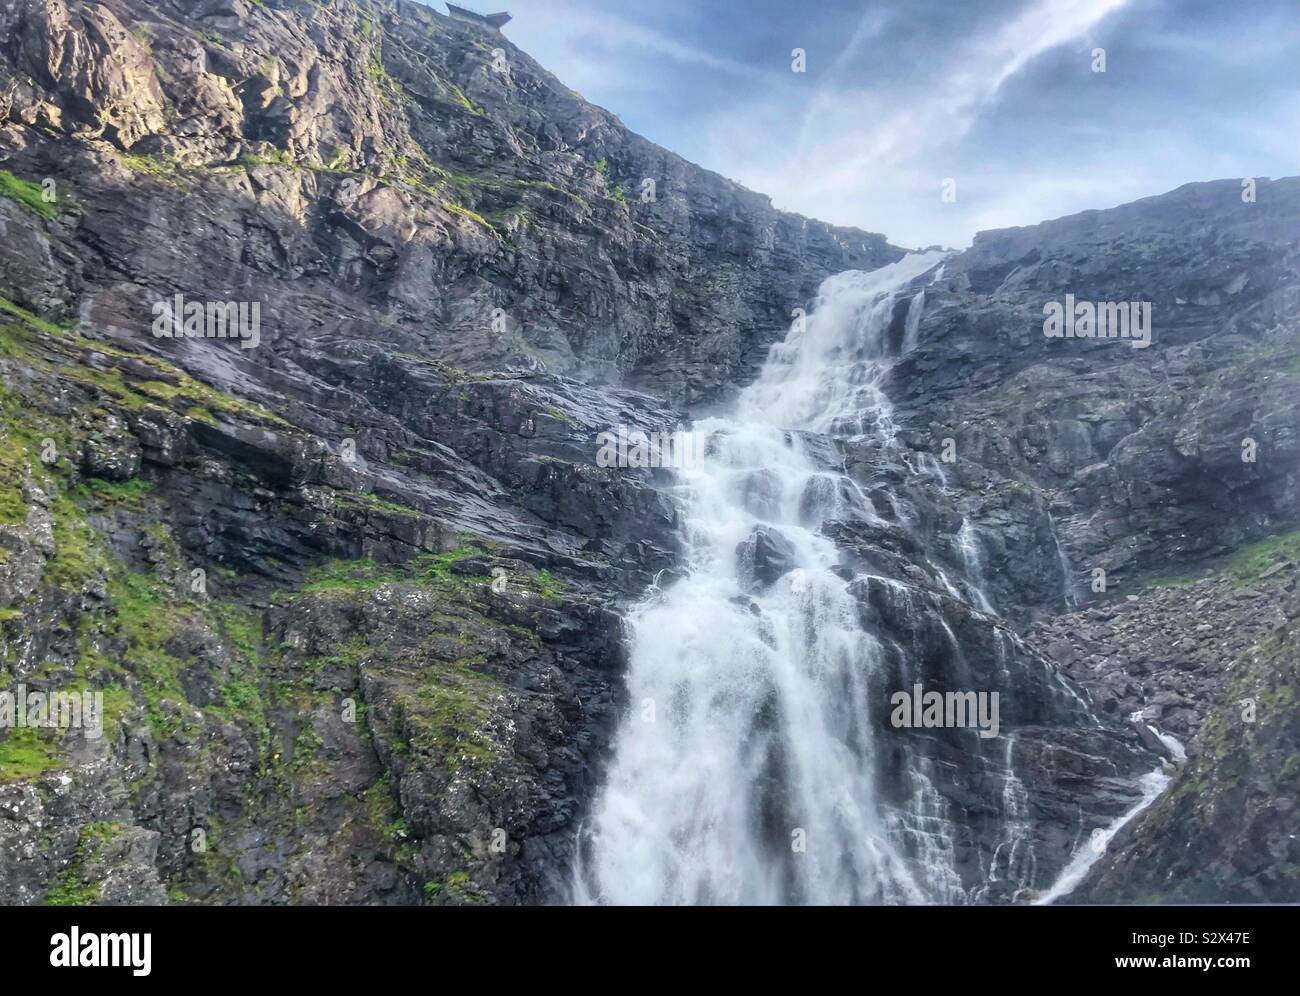 Waterfalls in Strollstigen, Norway Stock Photo